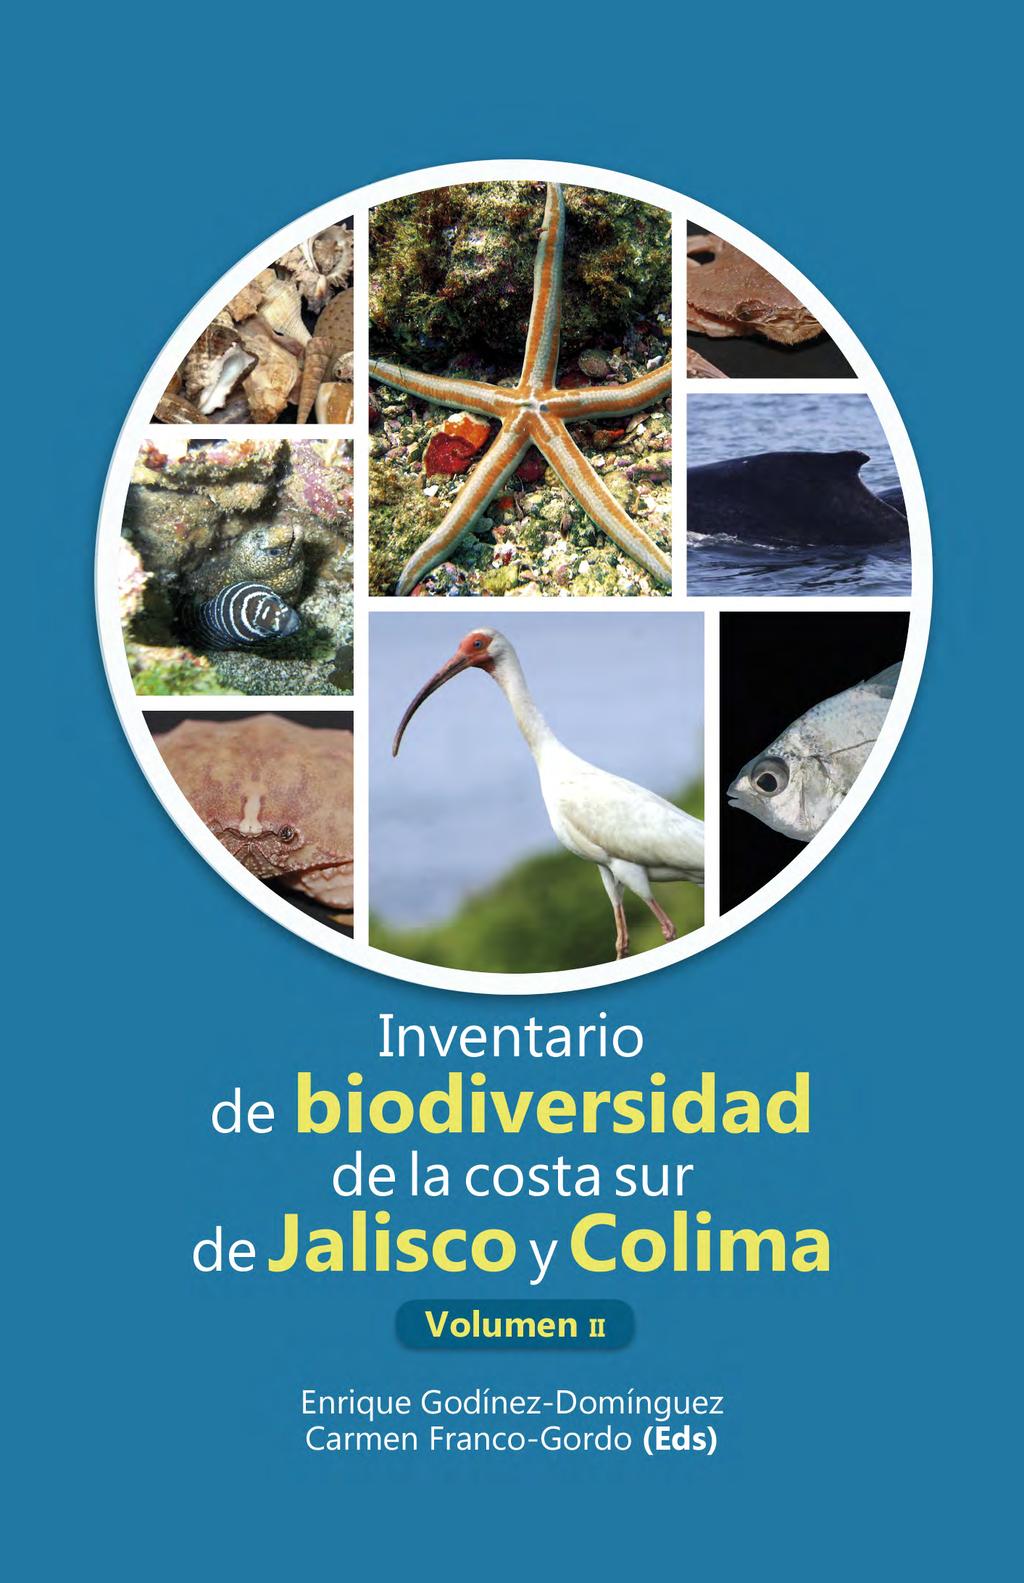 Inventario de biodiversidad de la costa sur de Jalisco y Colima Volumen 2.  Enrique Godínez-Domínguez María del Carmen Franco-Gordo (eds. - PDF  Descargar libre